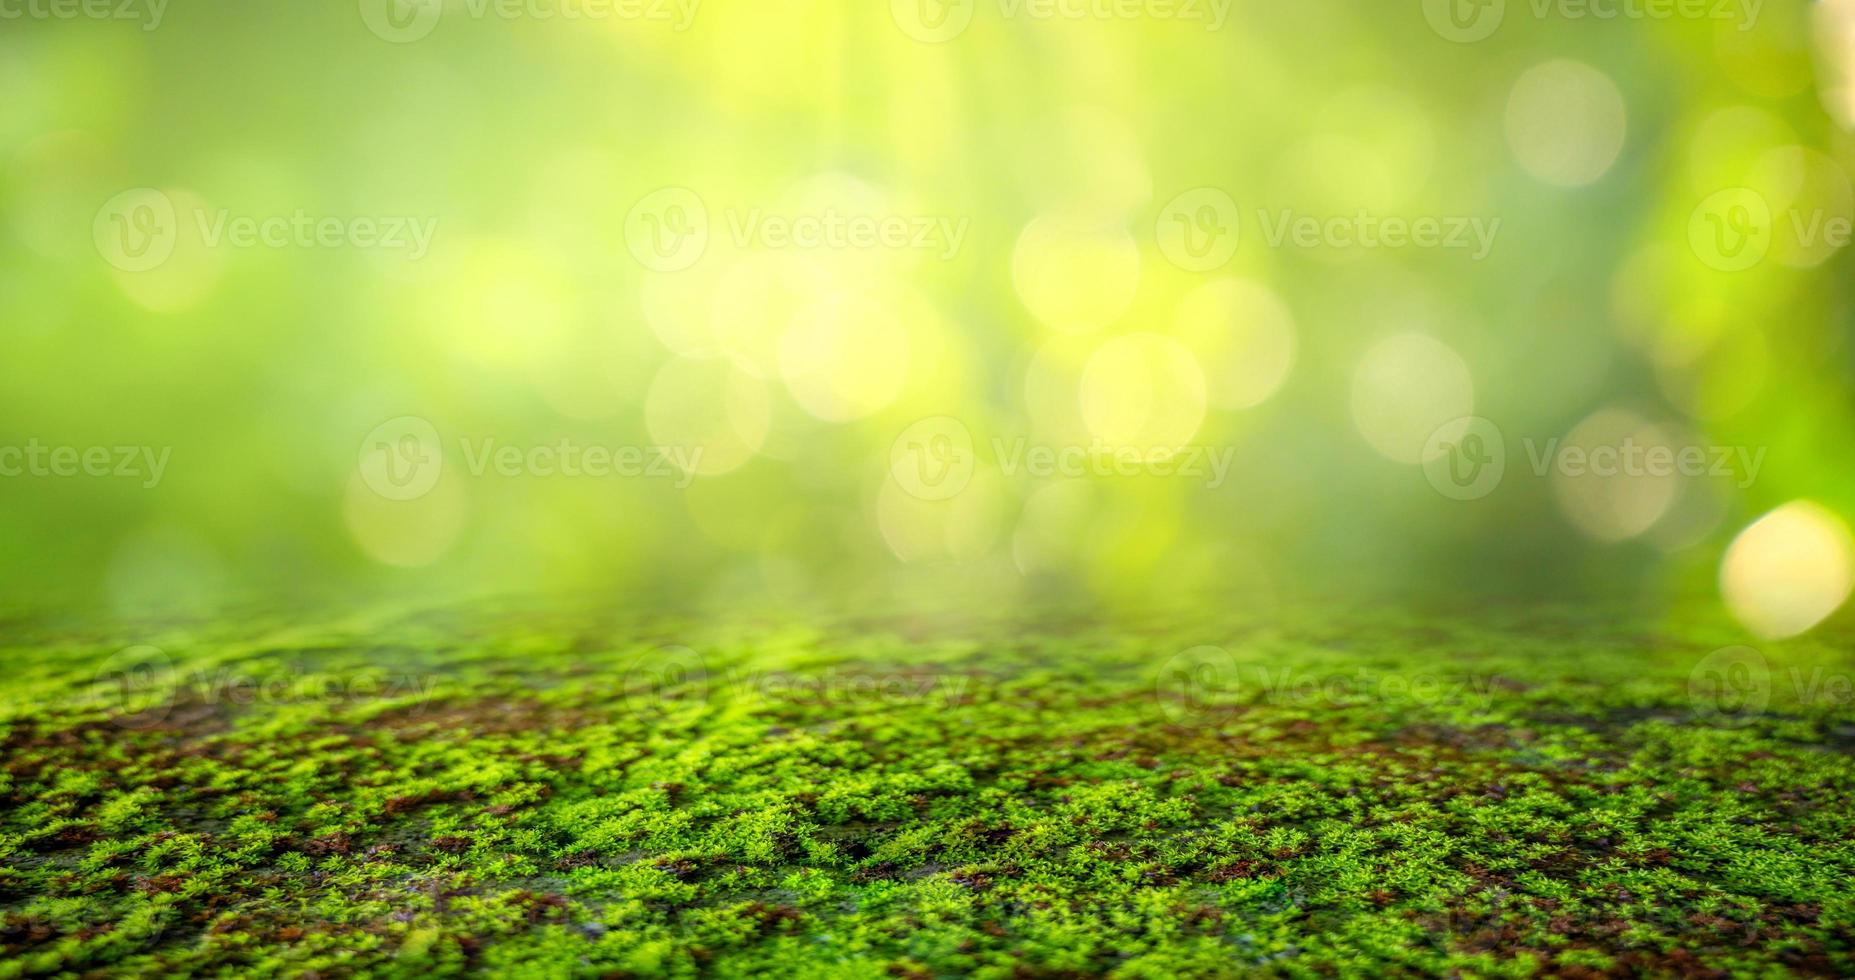 grüner Mooshintergrund, moosige Textur foto